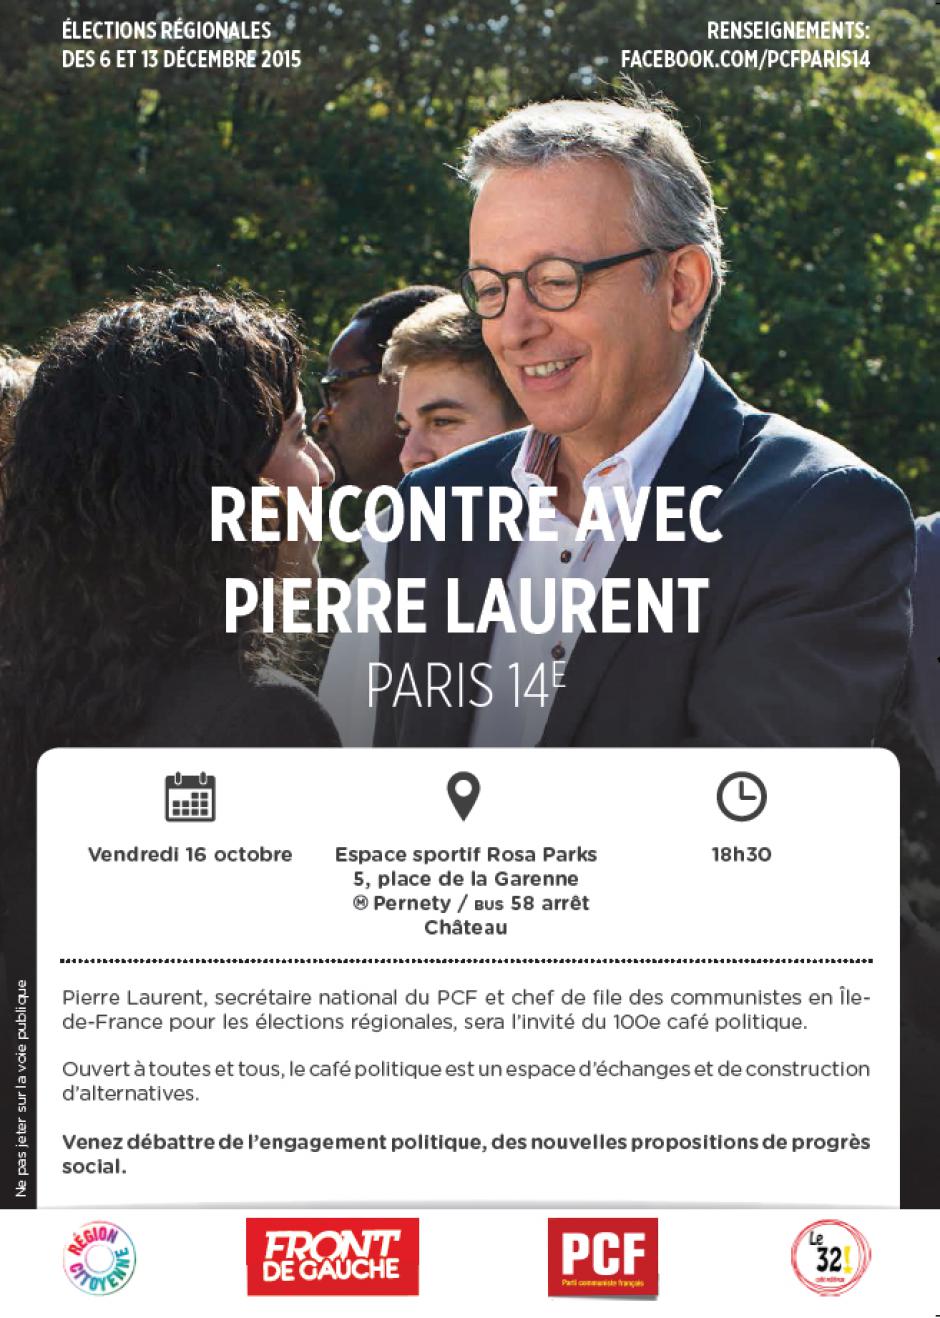 16 octobre 18h30 : Rencontre avec Pierre Laurent chef de file du PCF en Ile-de-France